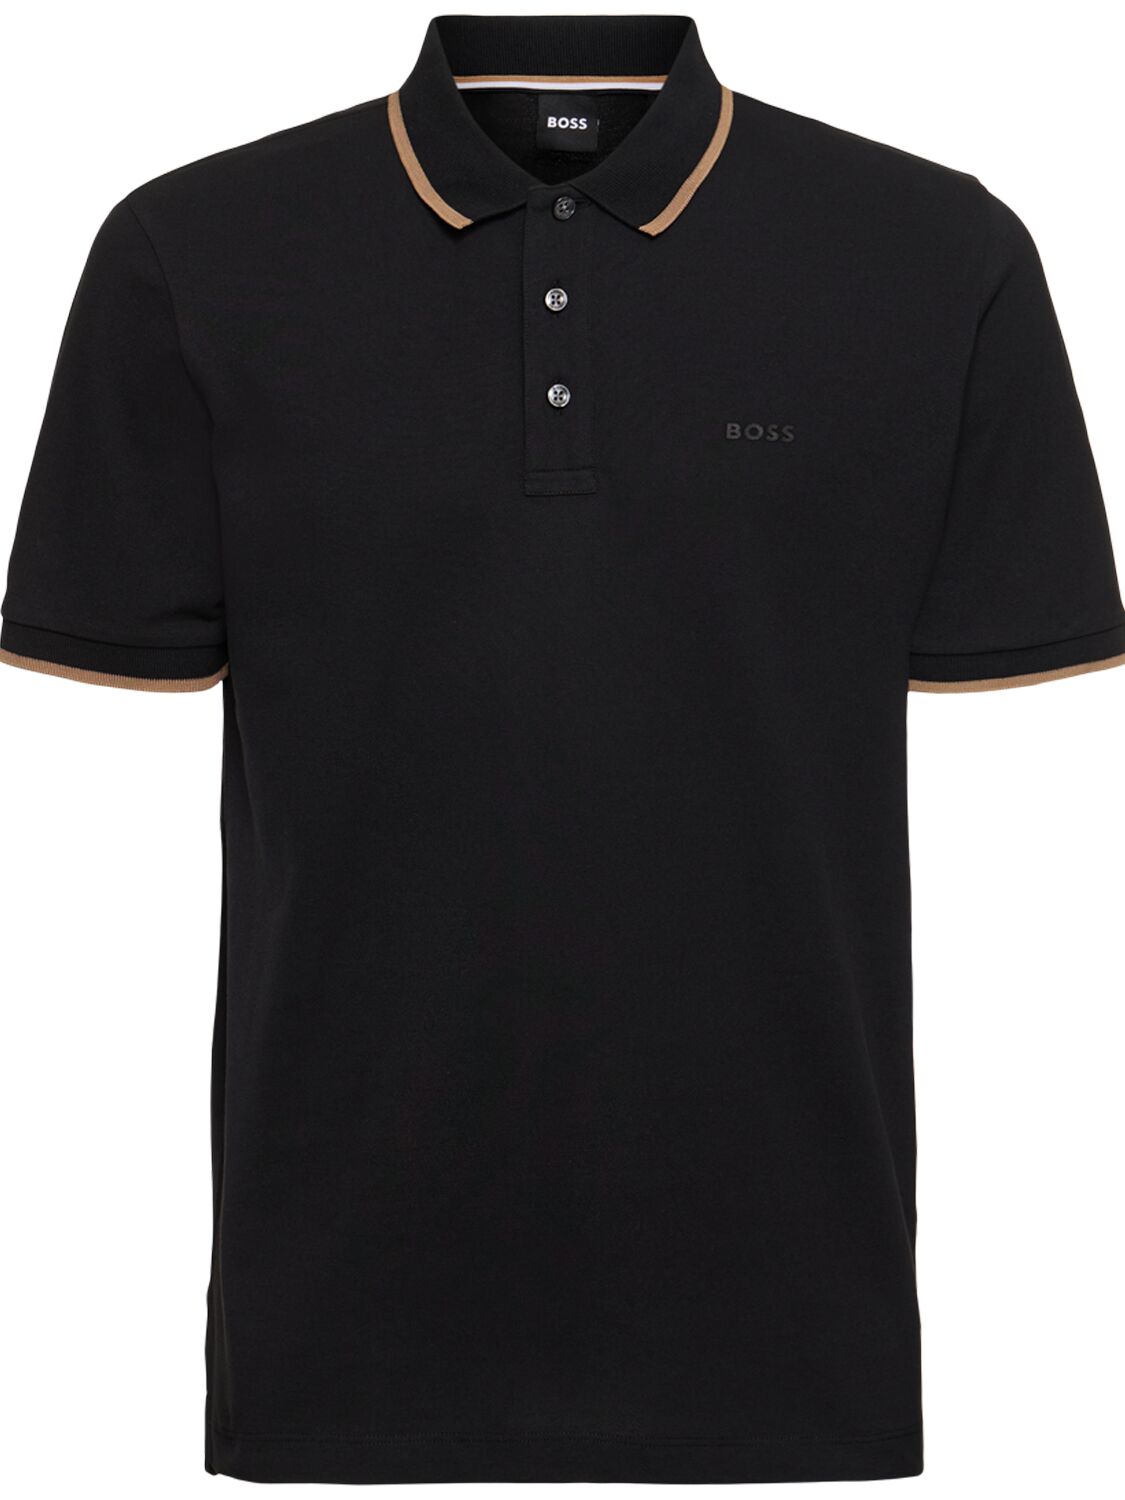 Hugo Boss Boss Parlay Piqué Cotton Polo Shirt In Black